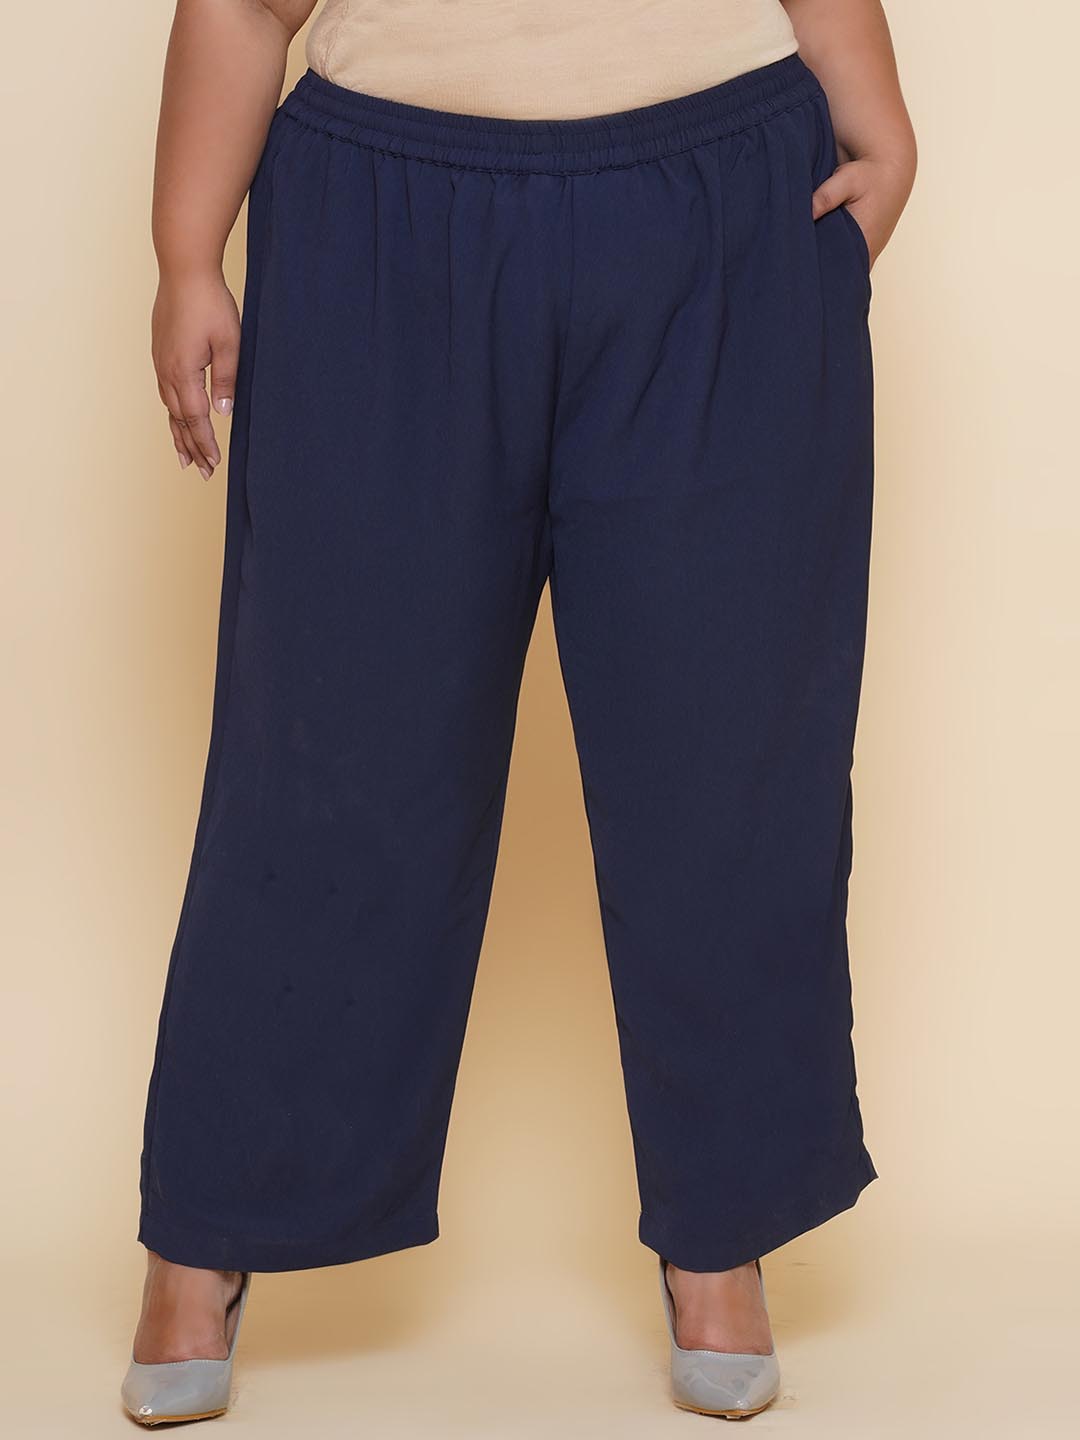 bottomwear_kiaahvi/trousers/KIPL9002/kipl9002-1.jpg